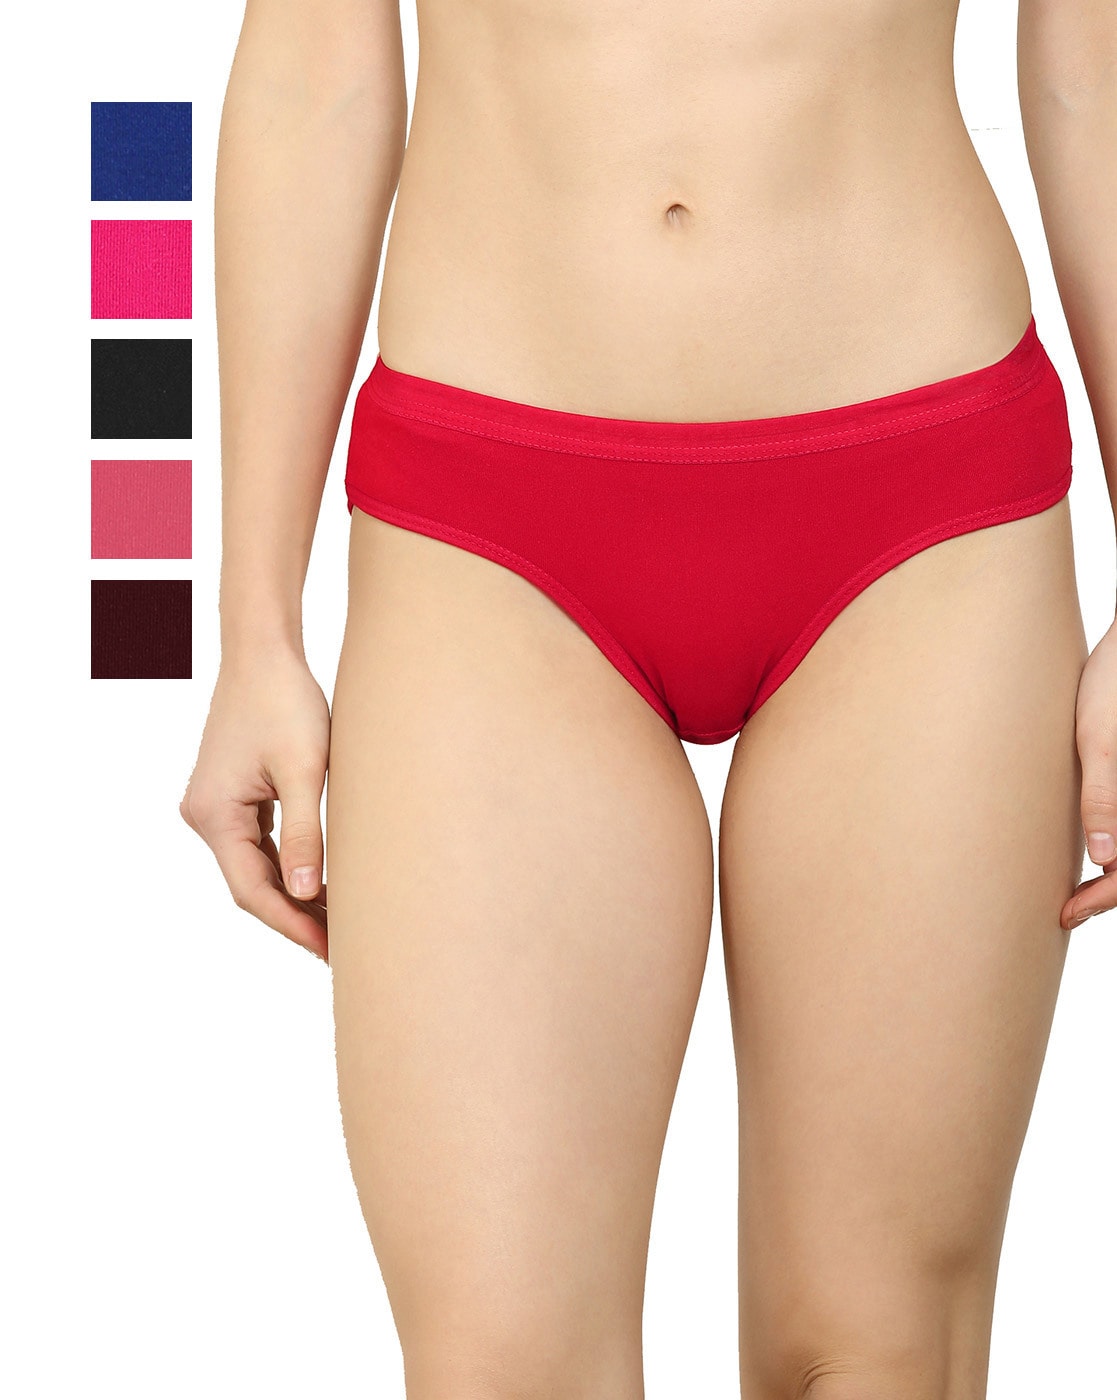 Pompeii Warrior Orange - White Underwear Panties - 1/6 Scale 